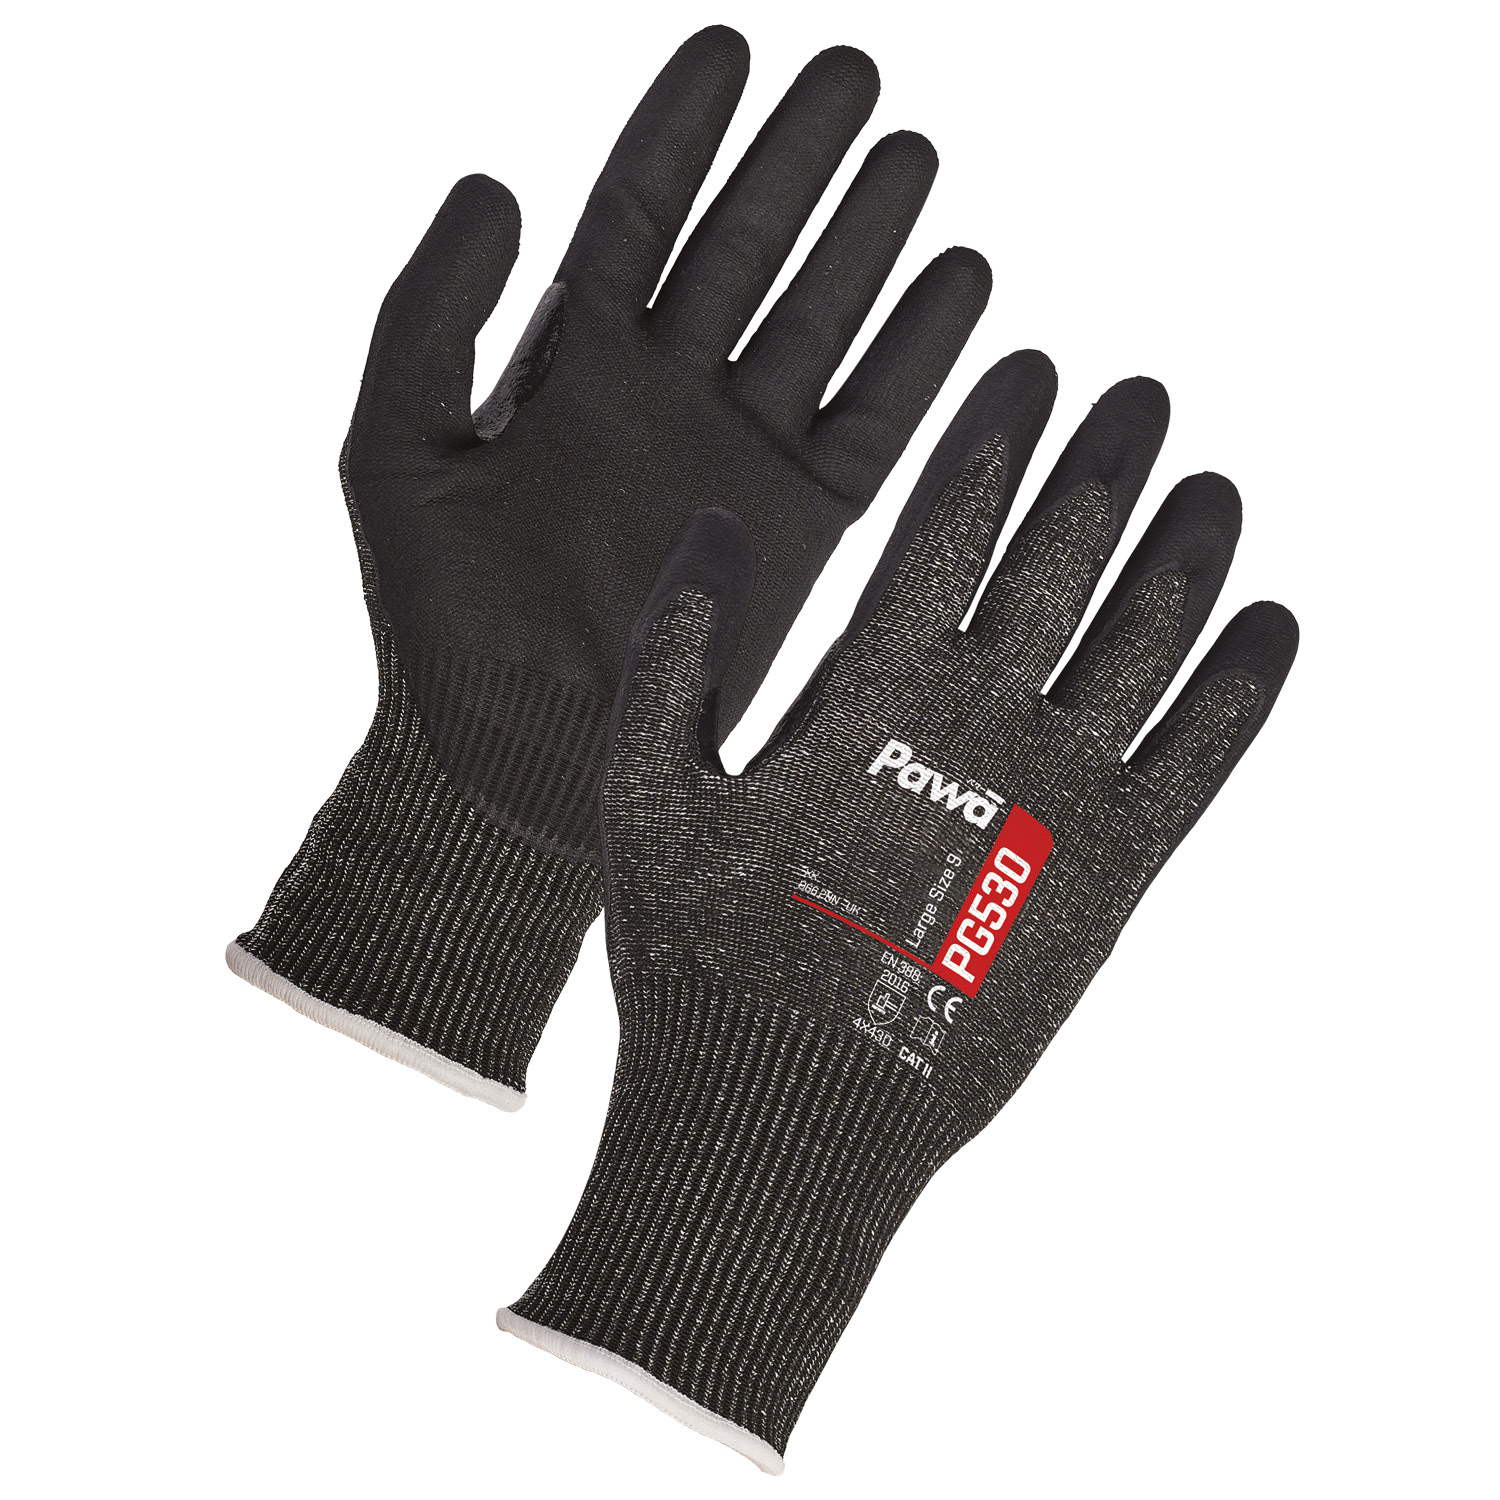 Pawa Gloves 530 - Small